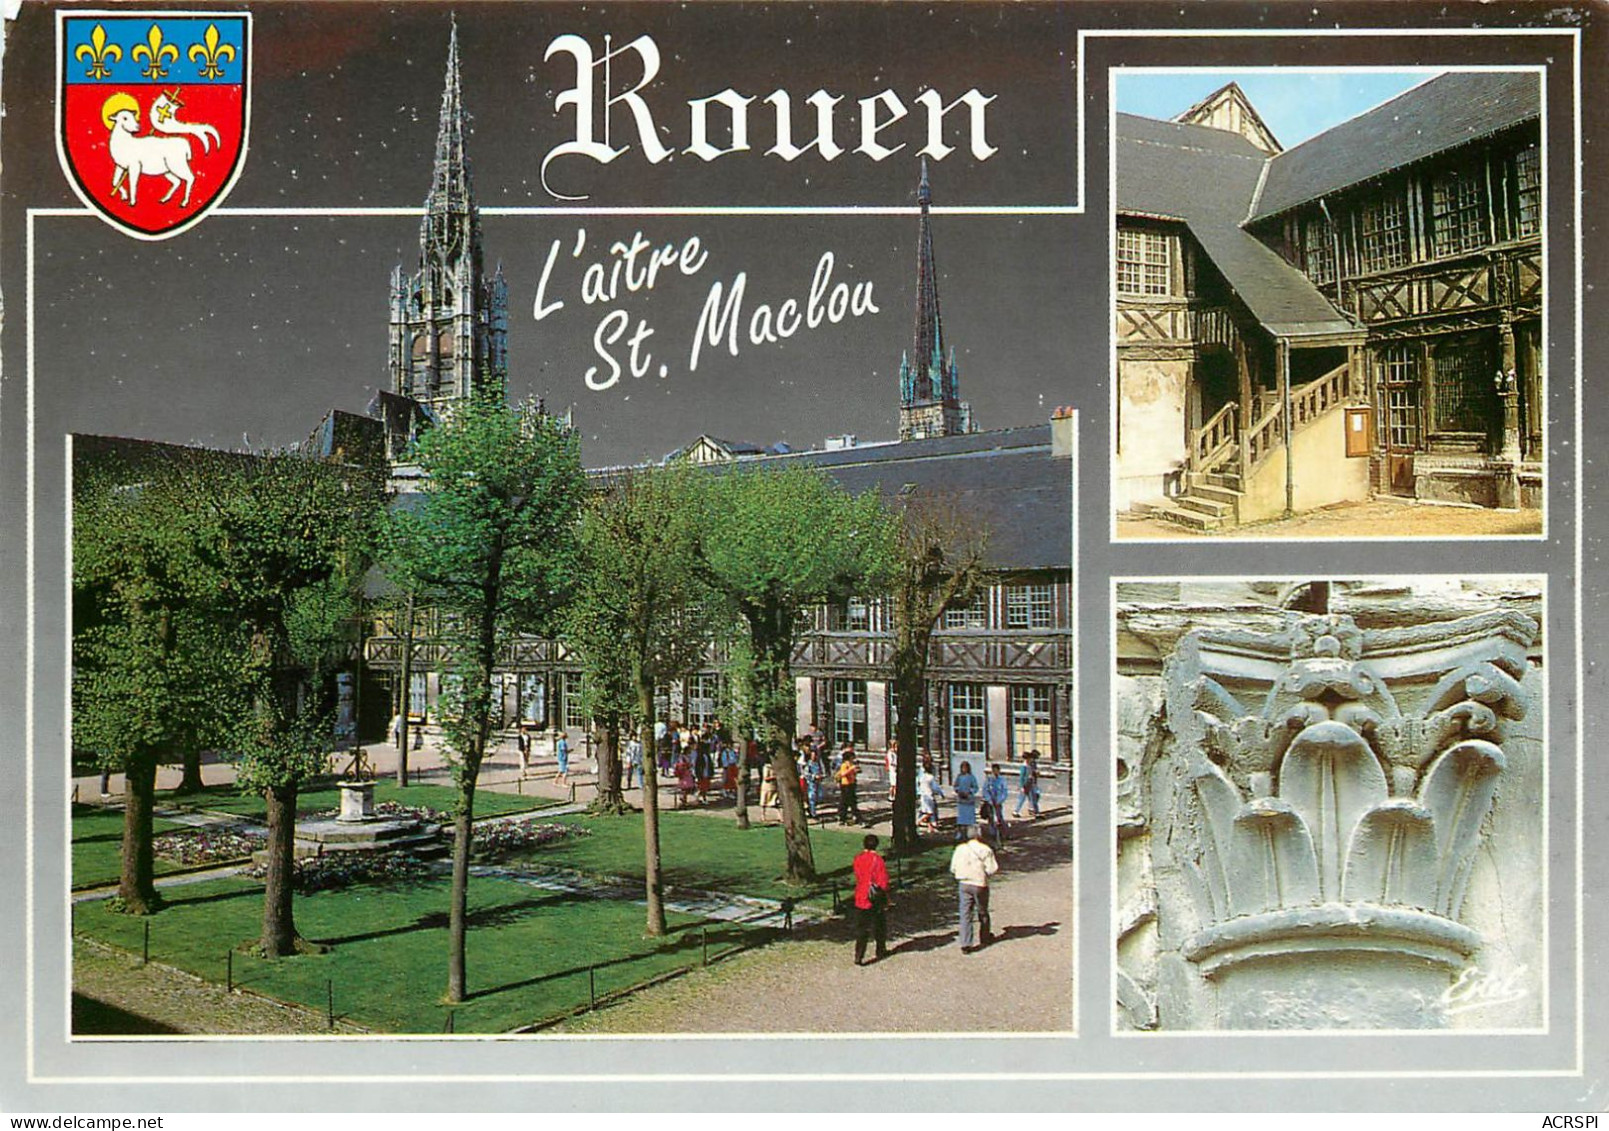 ROUEN L Aitre Saint Maclou Rare Exemple De Ces Cours Cimetieres 18(scan Recto-verso) MC2465 - Rouen